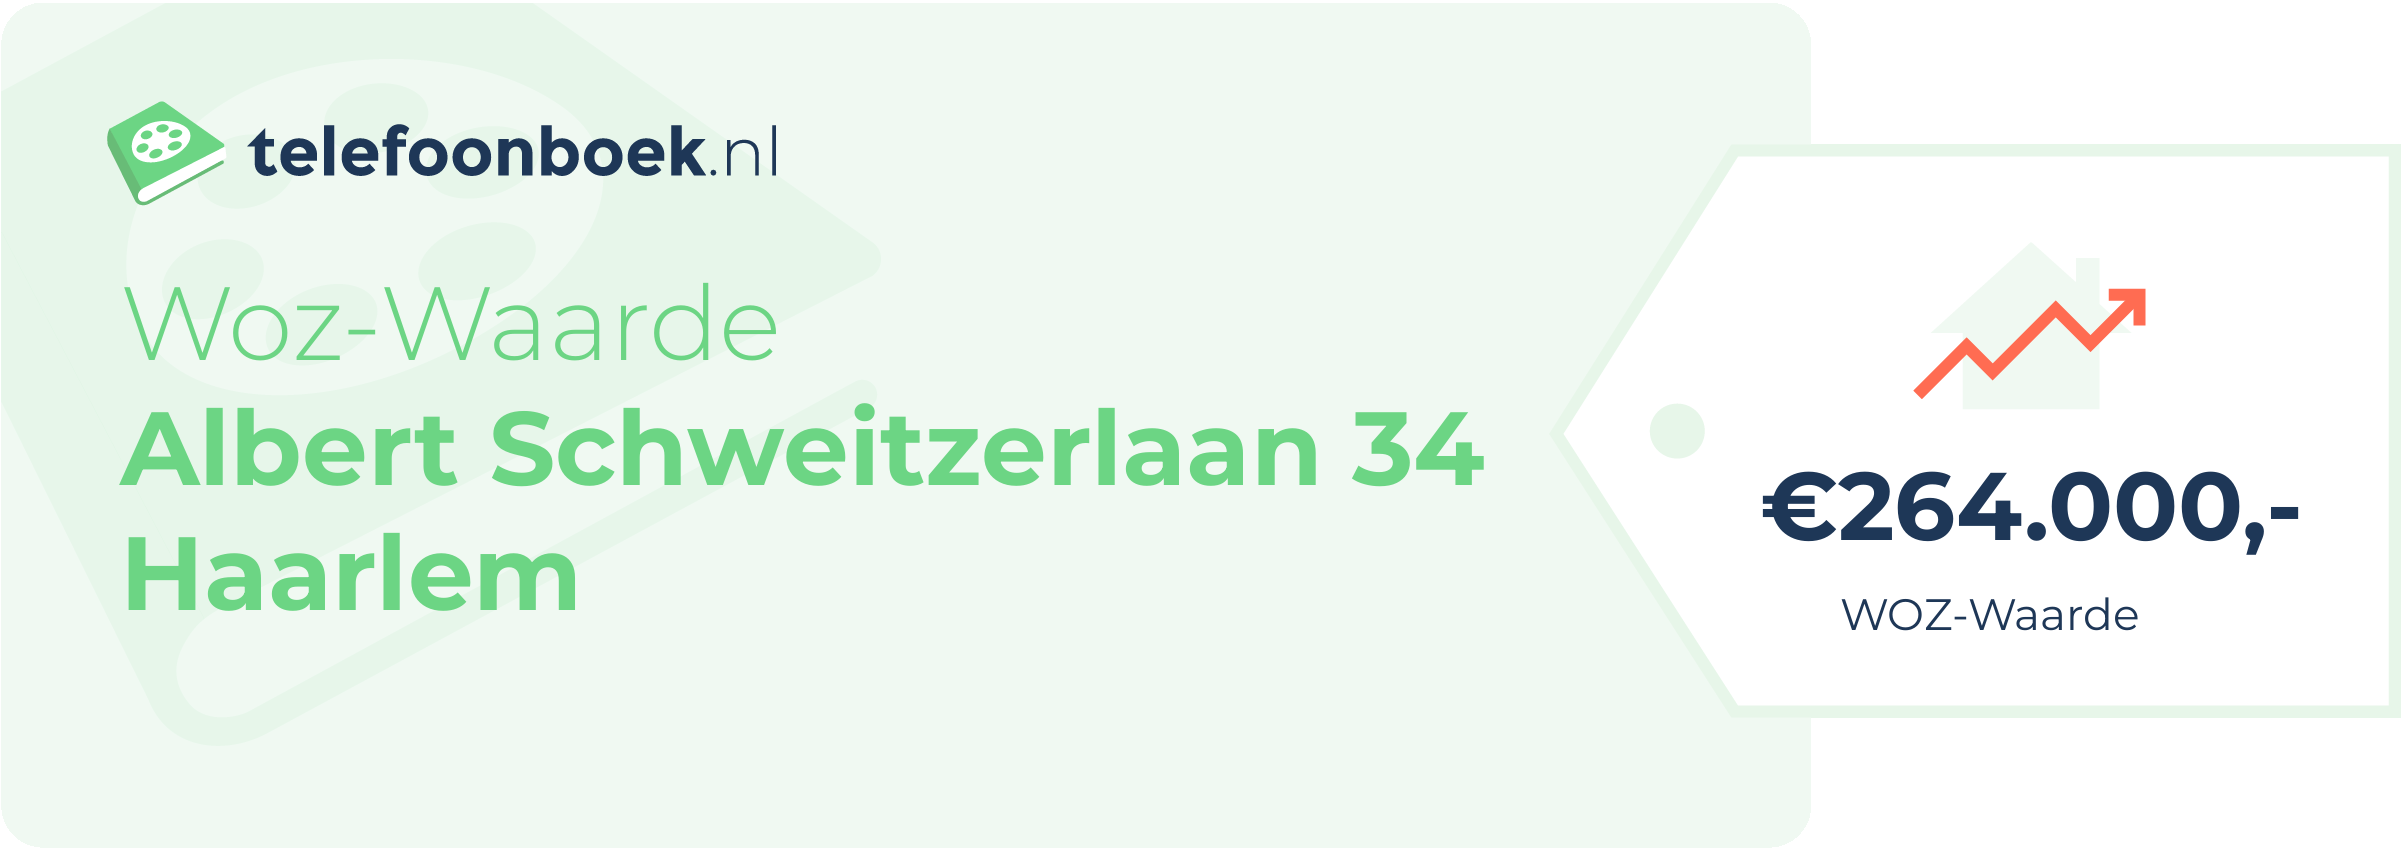 WOZ-waarde Albert Schweitzerlaan 34 Haarlem